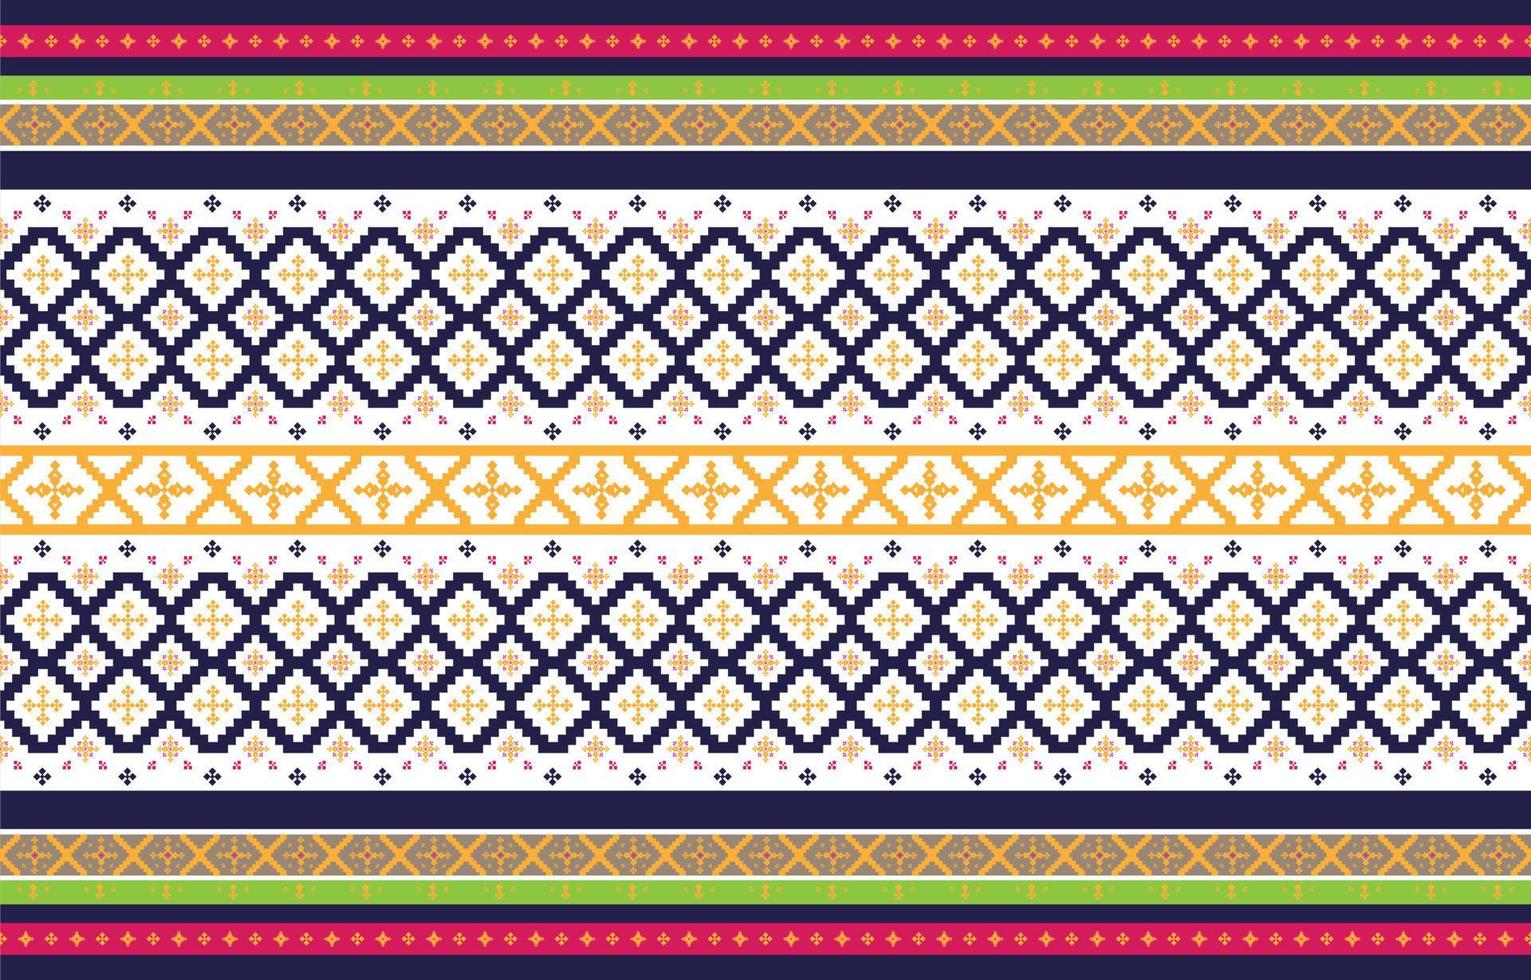 abstrakte geometrische und tribale Muster, Gebrauchsdesign lokale Stoffmuster, von indigenen Stämmen inspiriertes Design. geometrische Vektorillustration vektor